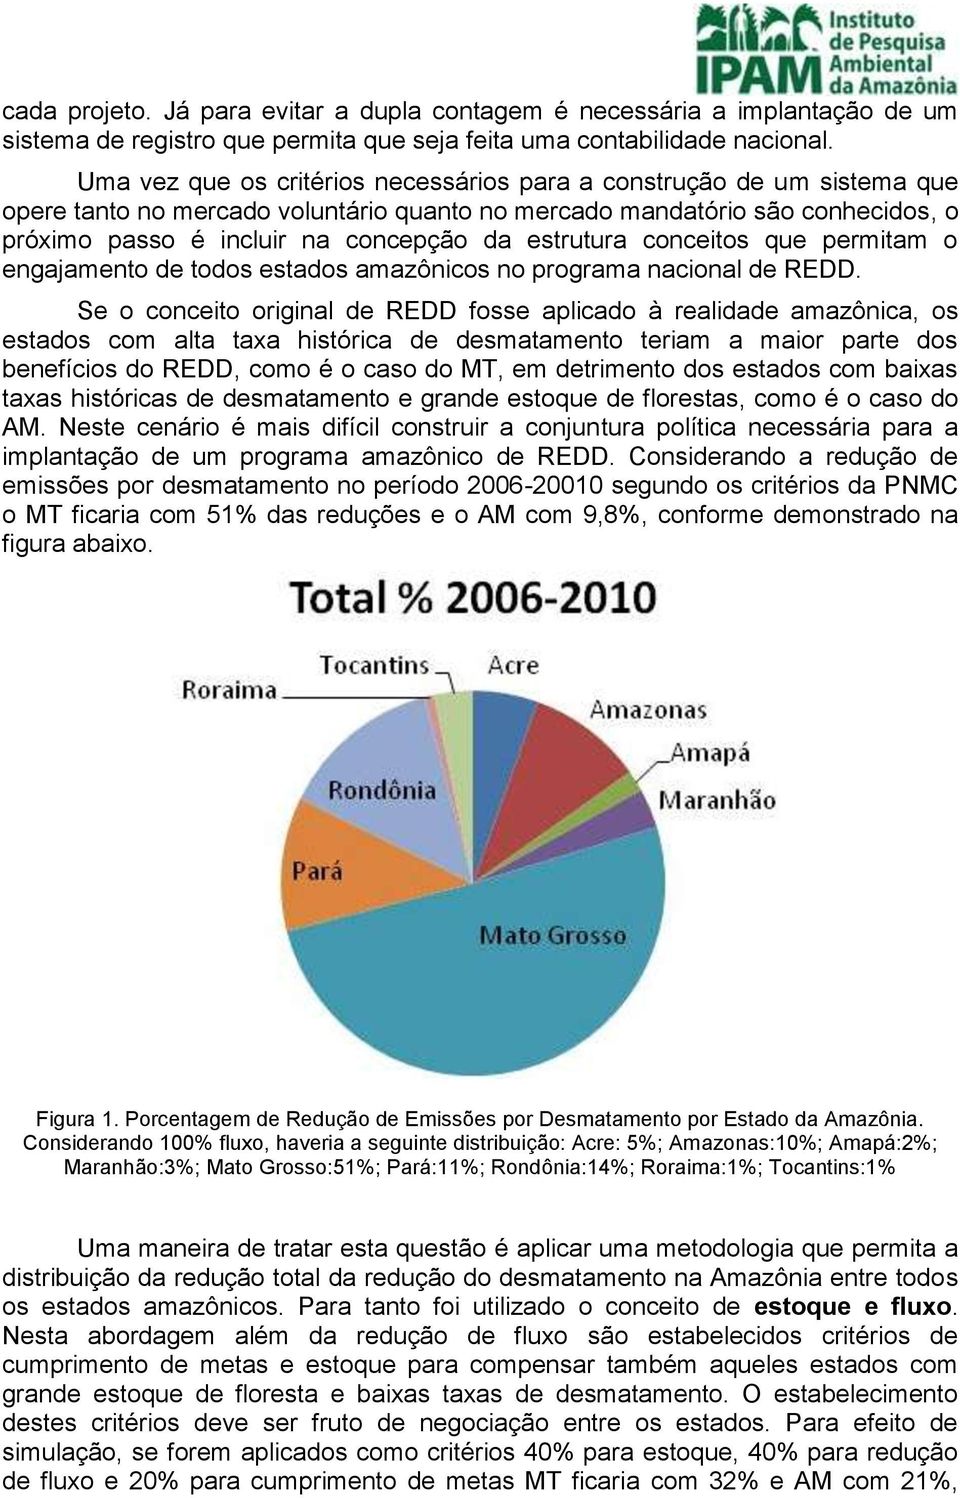 estrutura conceitos que permitam o engajamento de todos estados amazônicos no programa nacional de REDD.